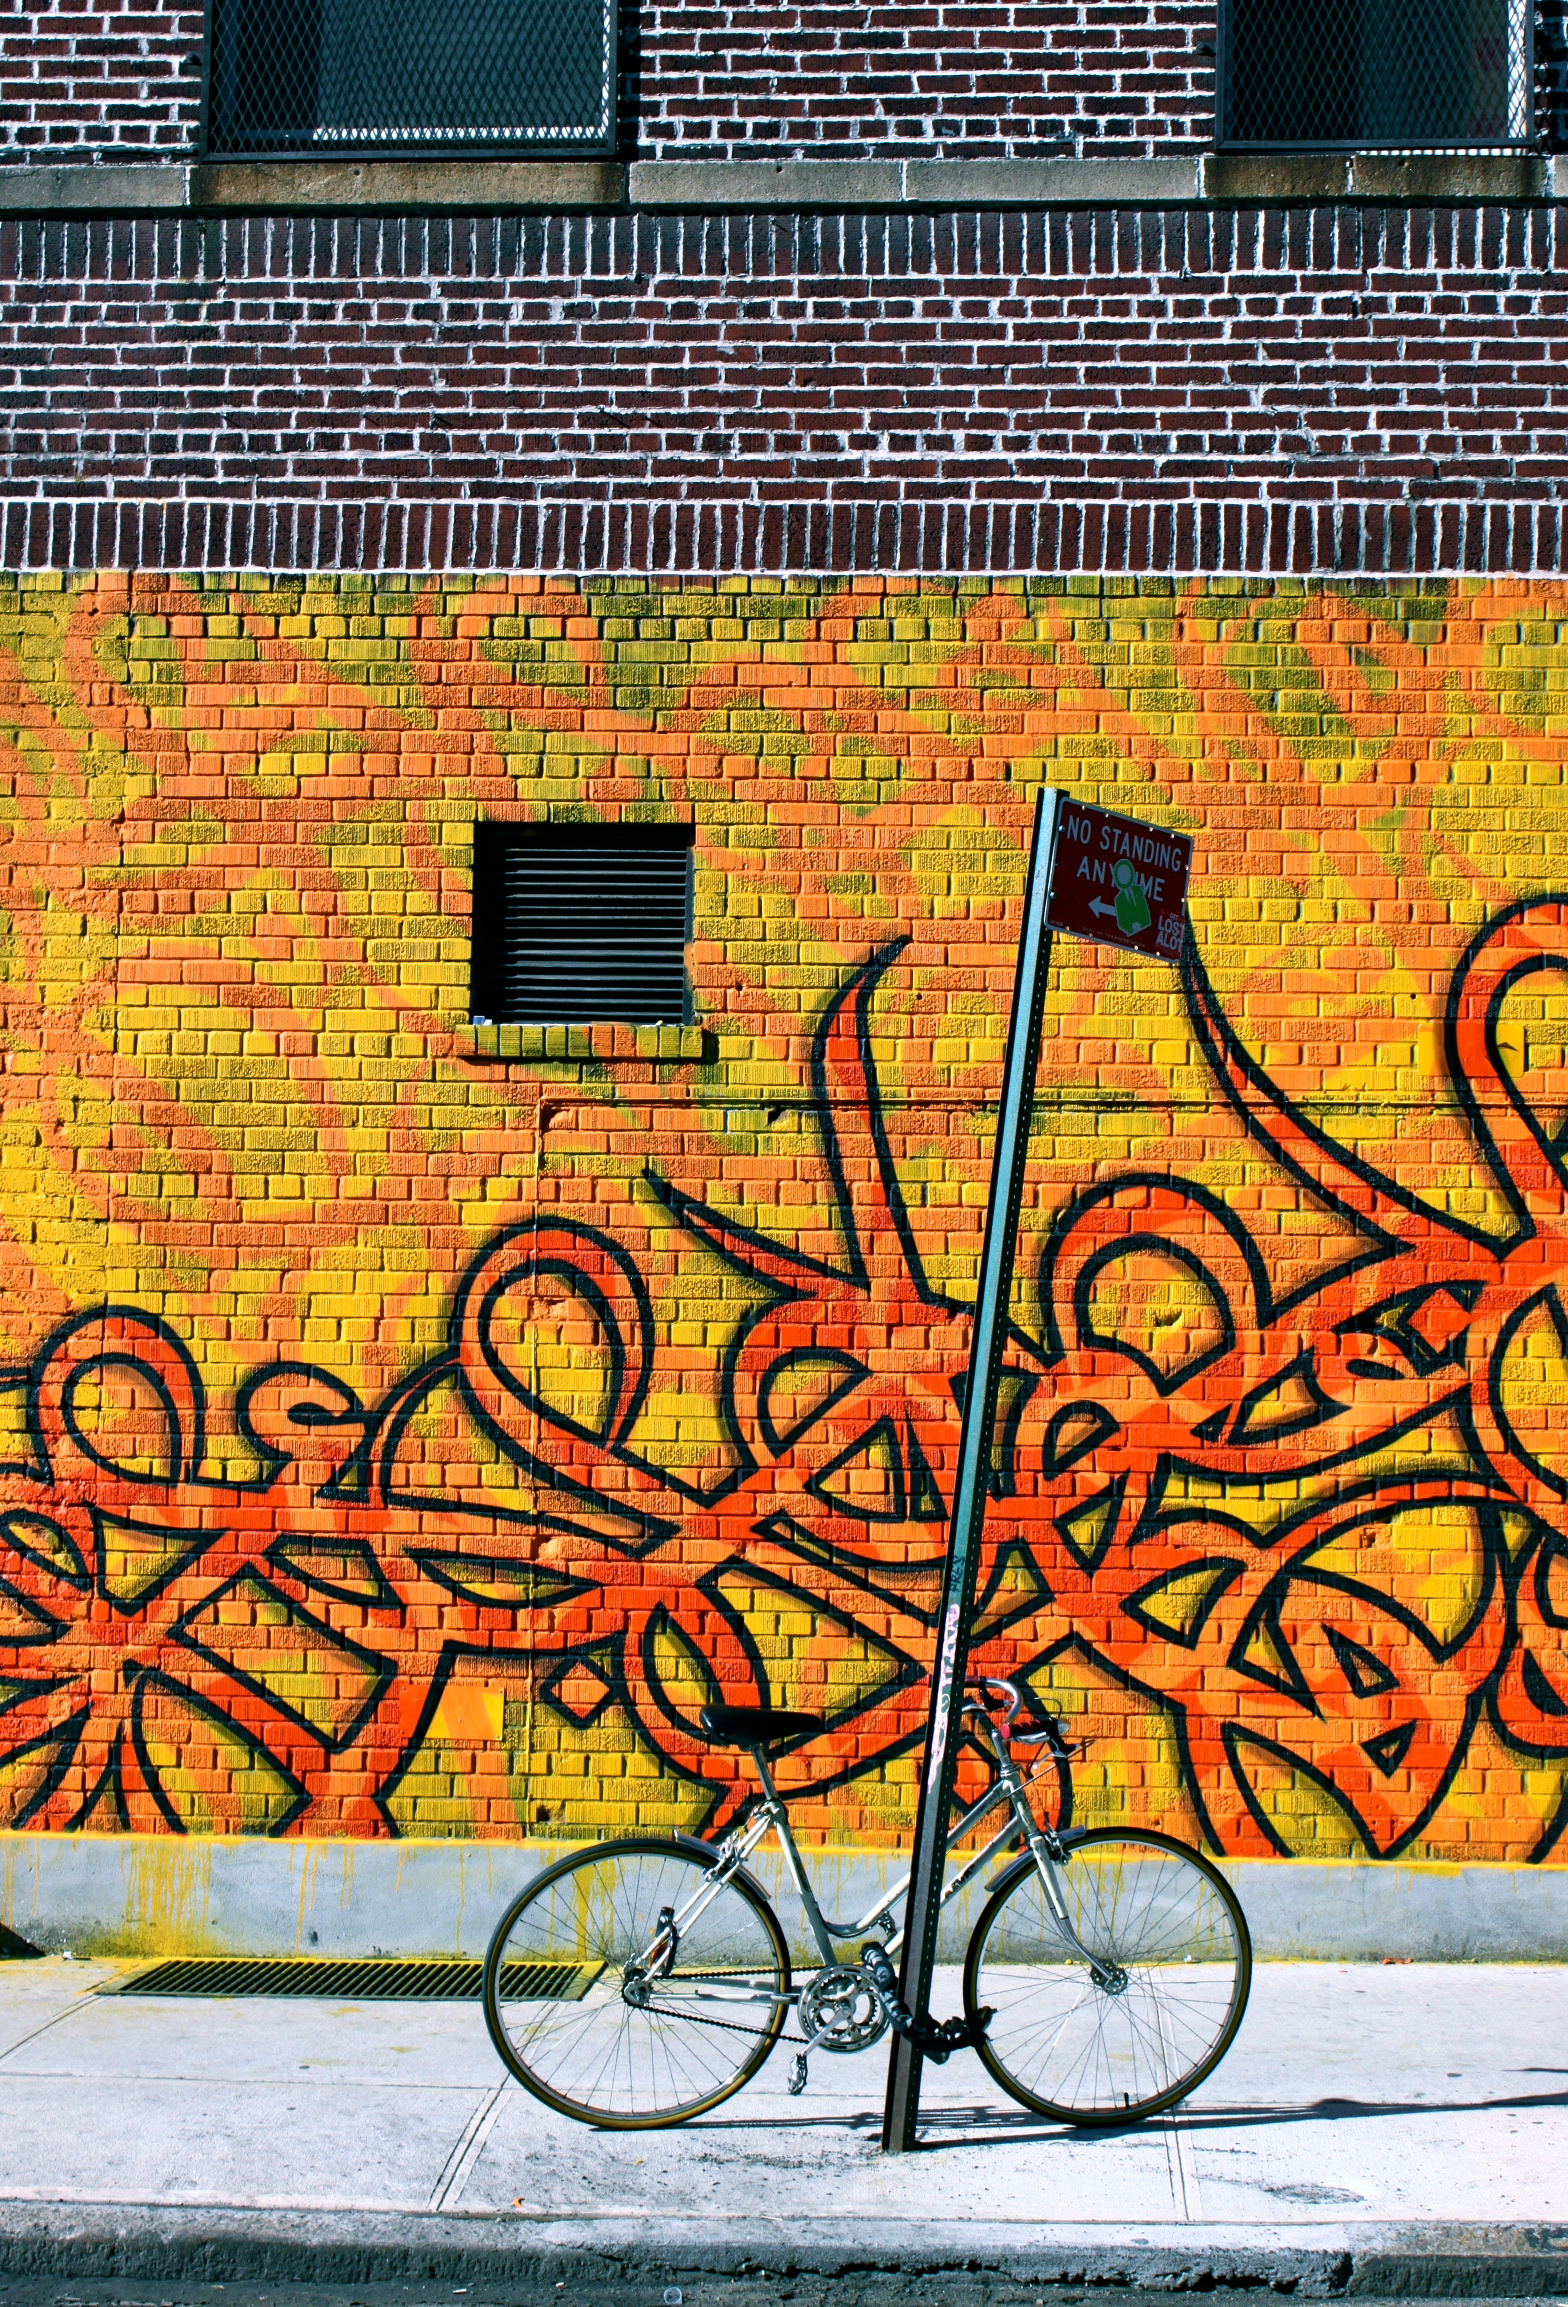 nyc graffiti street art